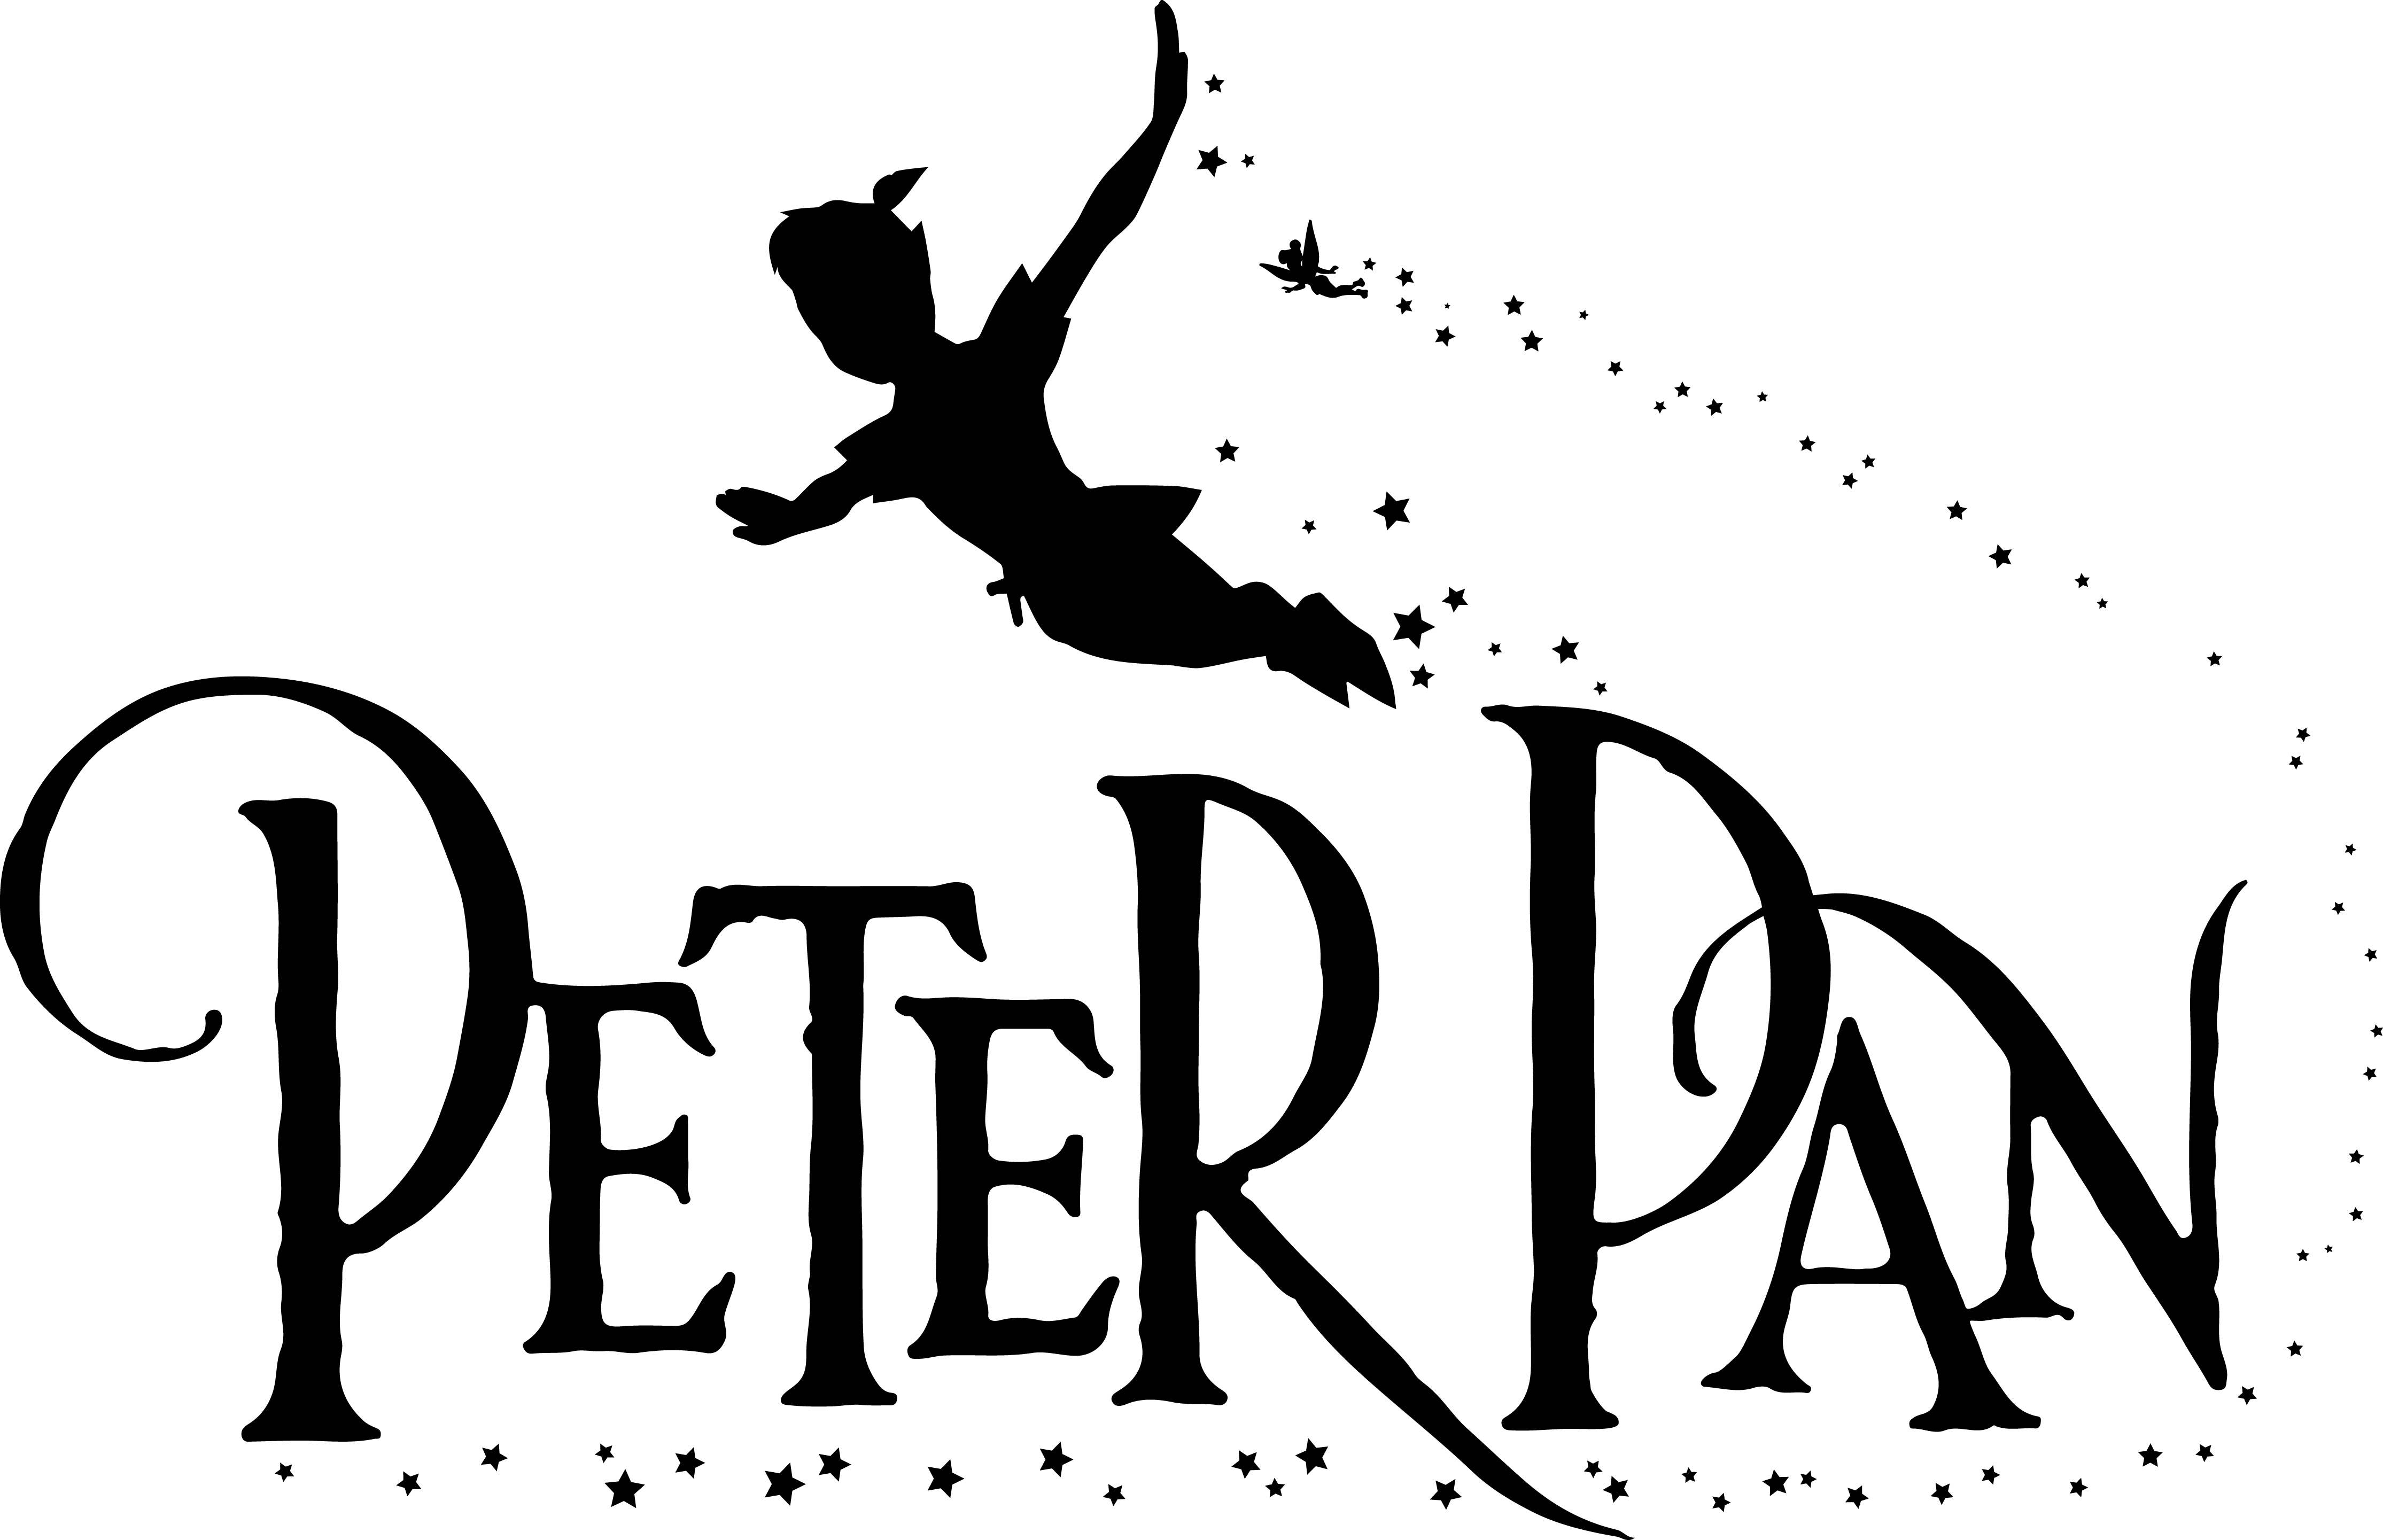 Peter Pan Silhouette Clip Art at GetDrawings | Free download